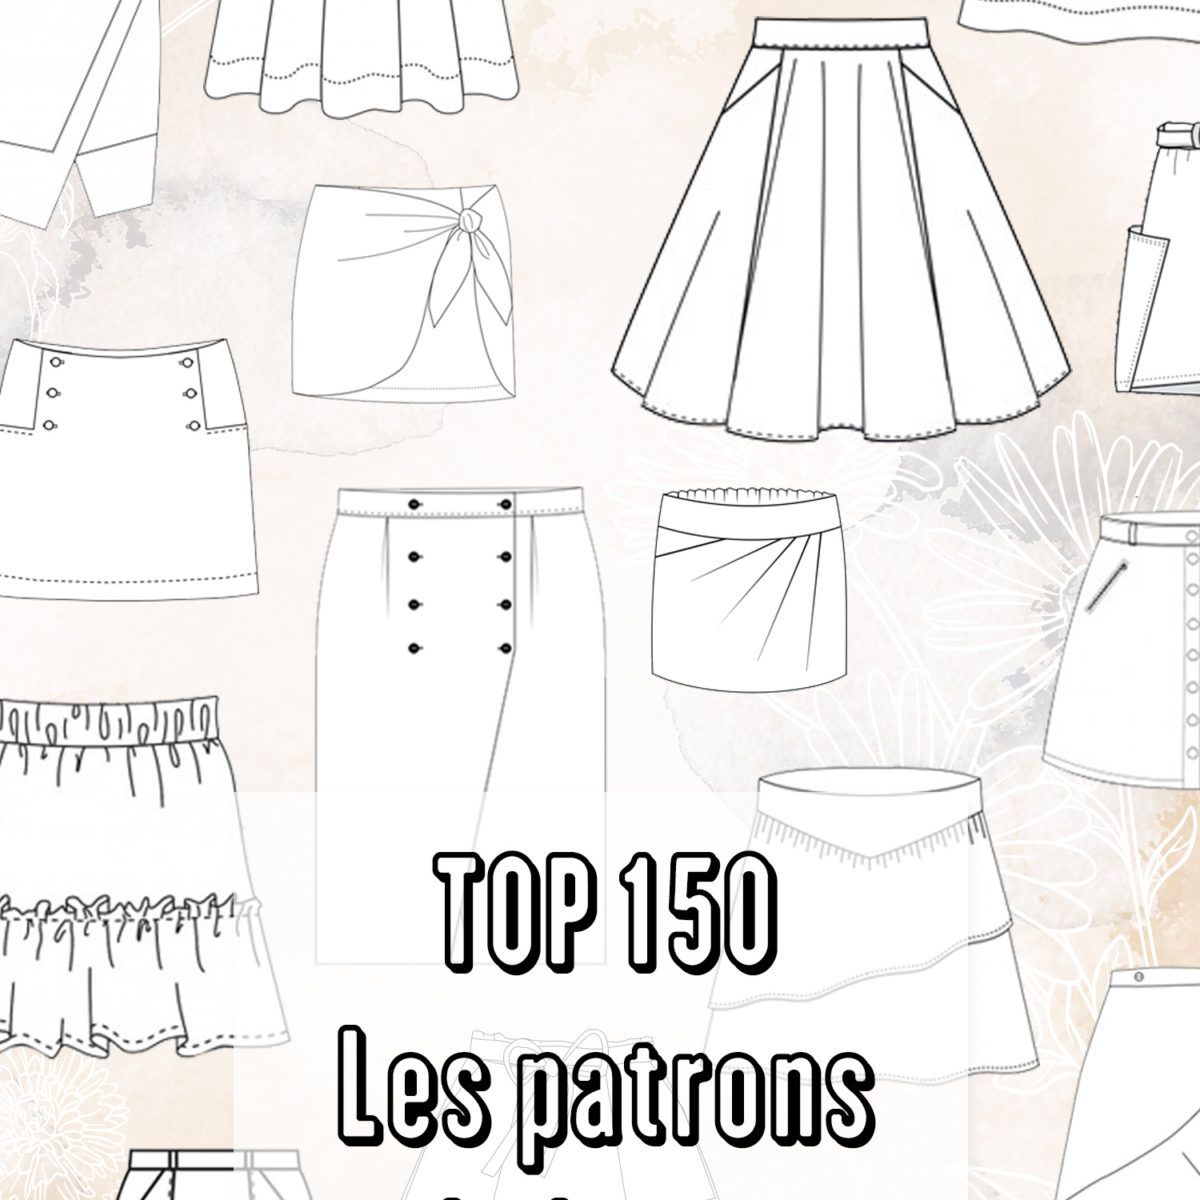 TOP 150 / PATRONS DE JUPES - Atelier Svila